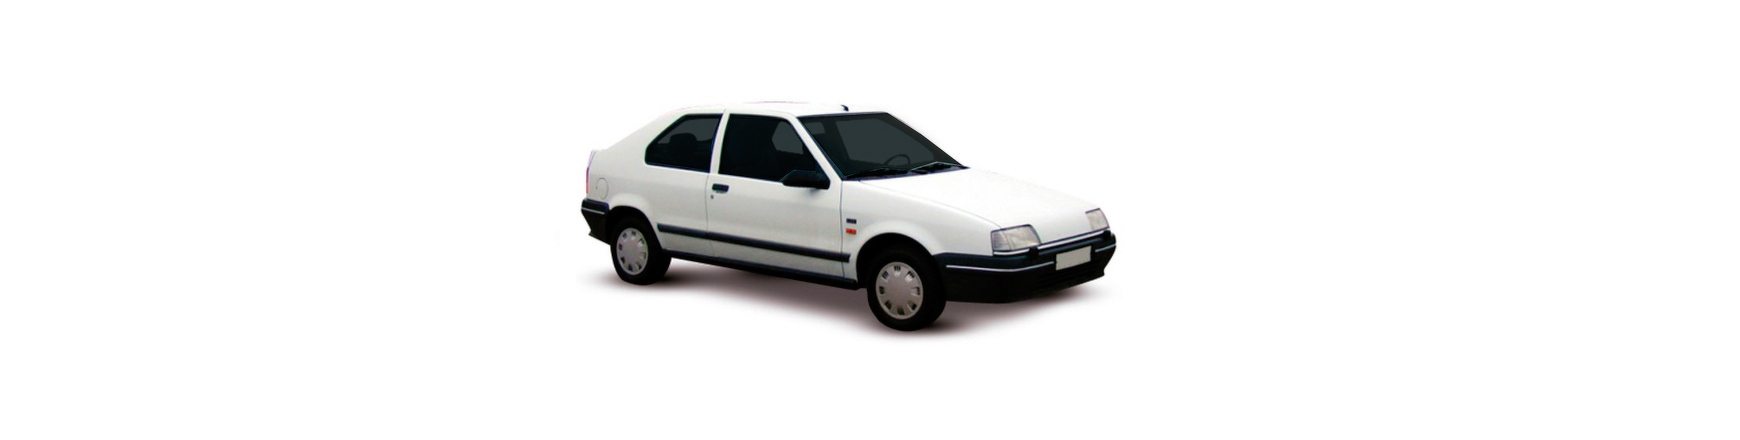 Piezas y Recambios de Renault R19 (53) de 1988 a 1995 | Veramauto.es